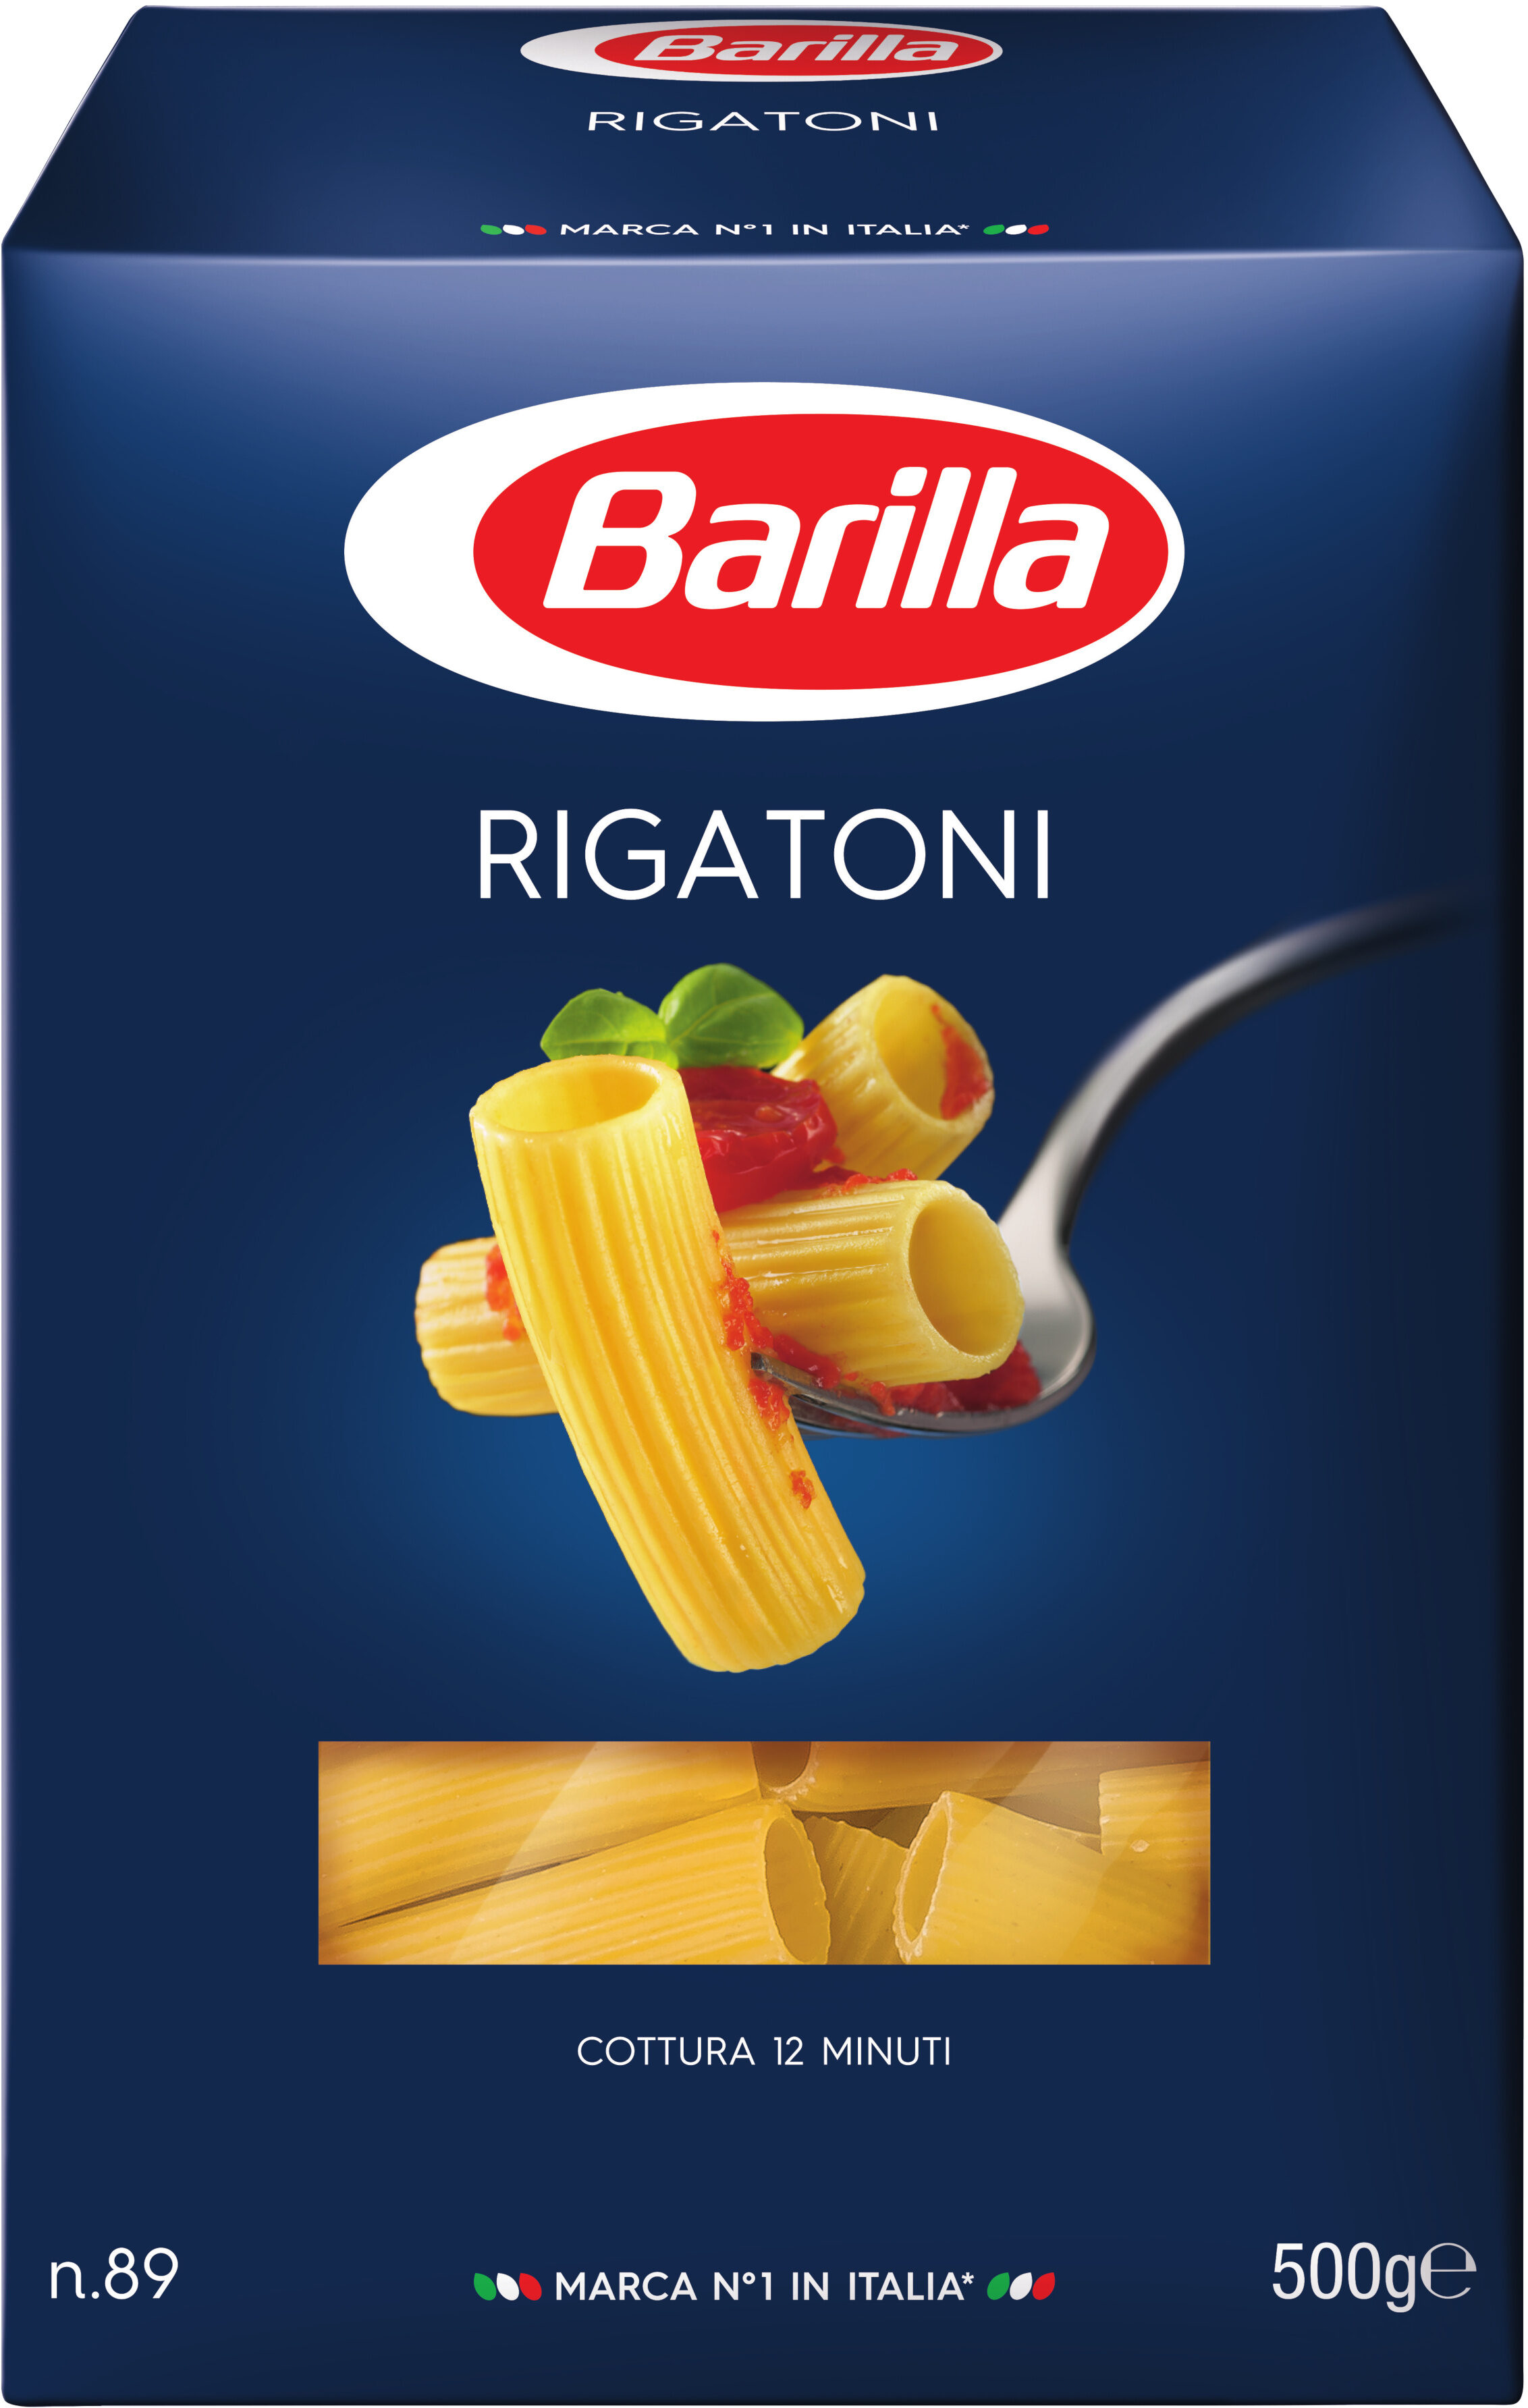 Barilla pates rigatoni - Producto - fr